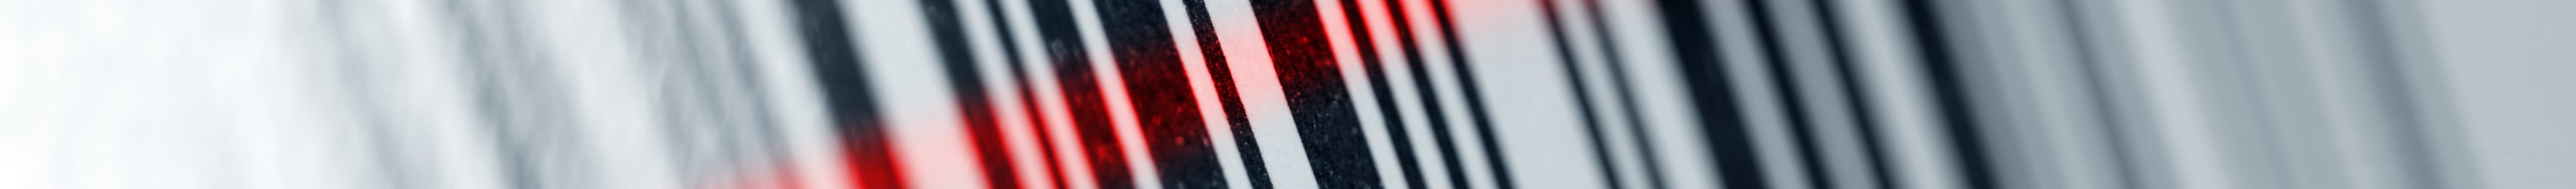 Strichcode mit GTIN wird von rotem Laserscanner ausgelesen